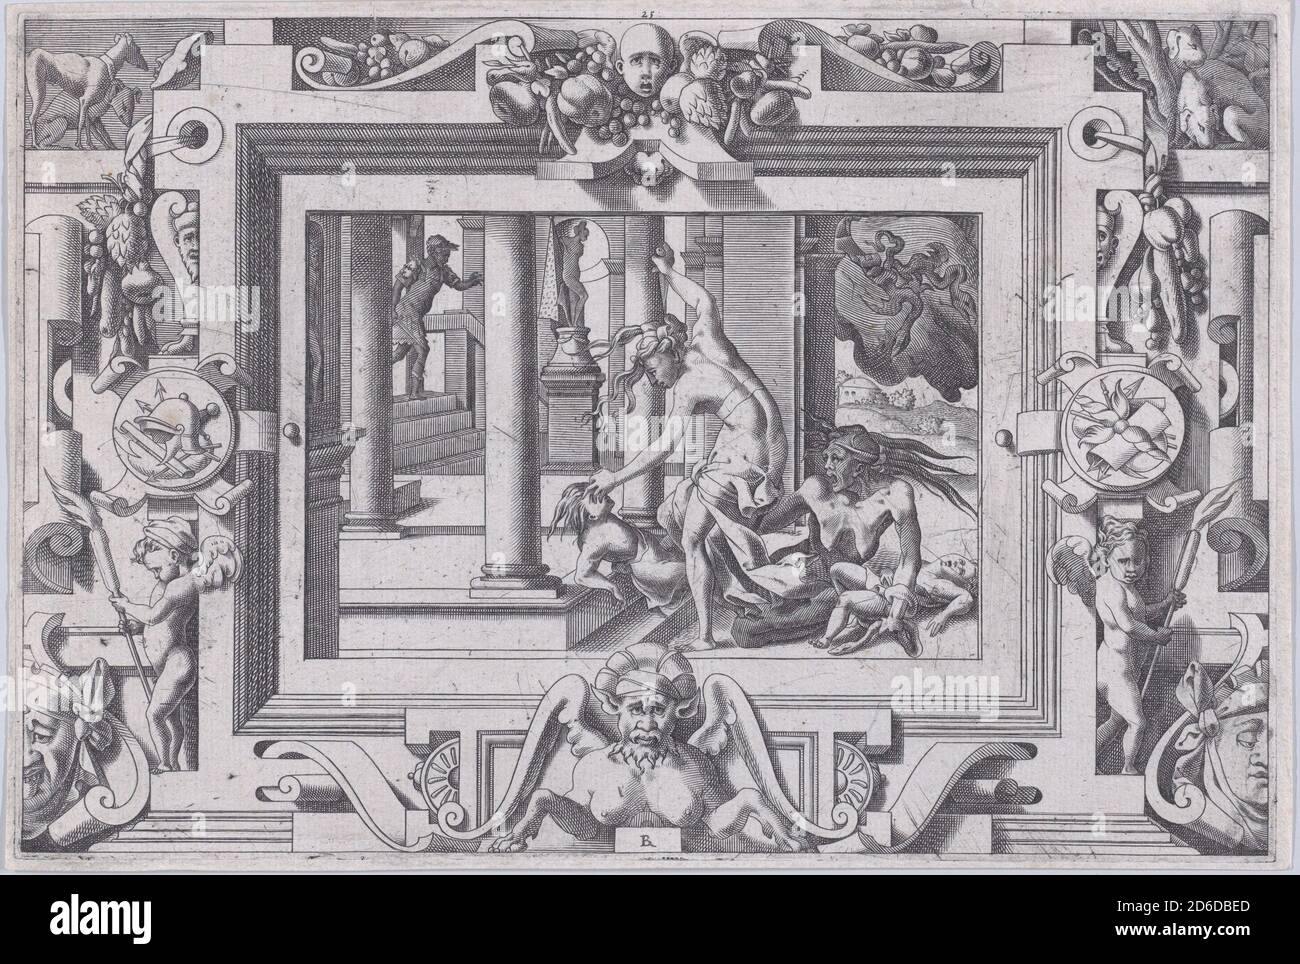 Medea uccide i suoi due figli di Jason (pour qui d'Abbyrte a le sang repandu, fait que du sien le tort lui soit randu...), 1563. Foto Stock